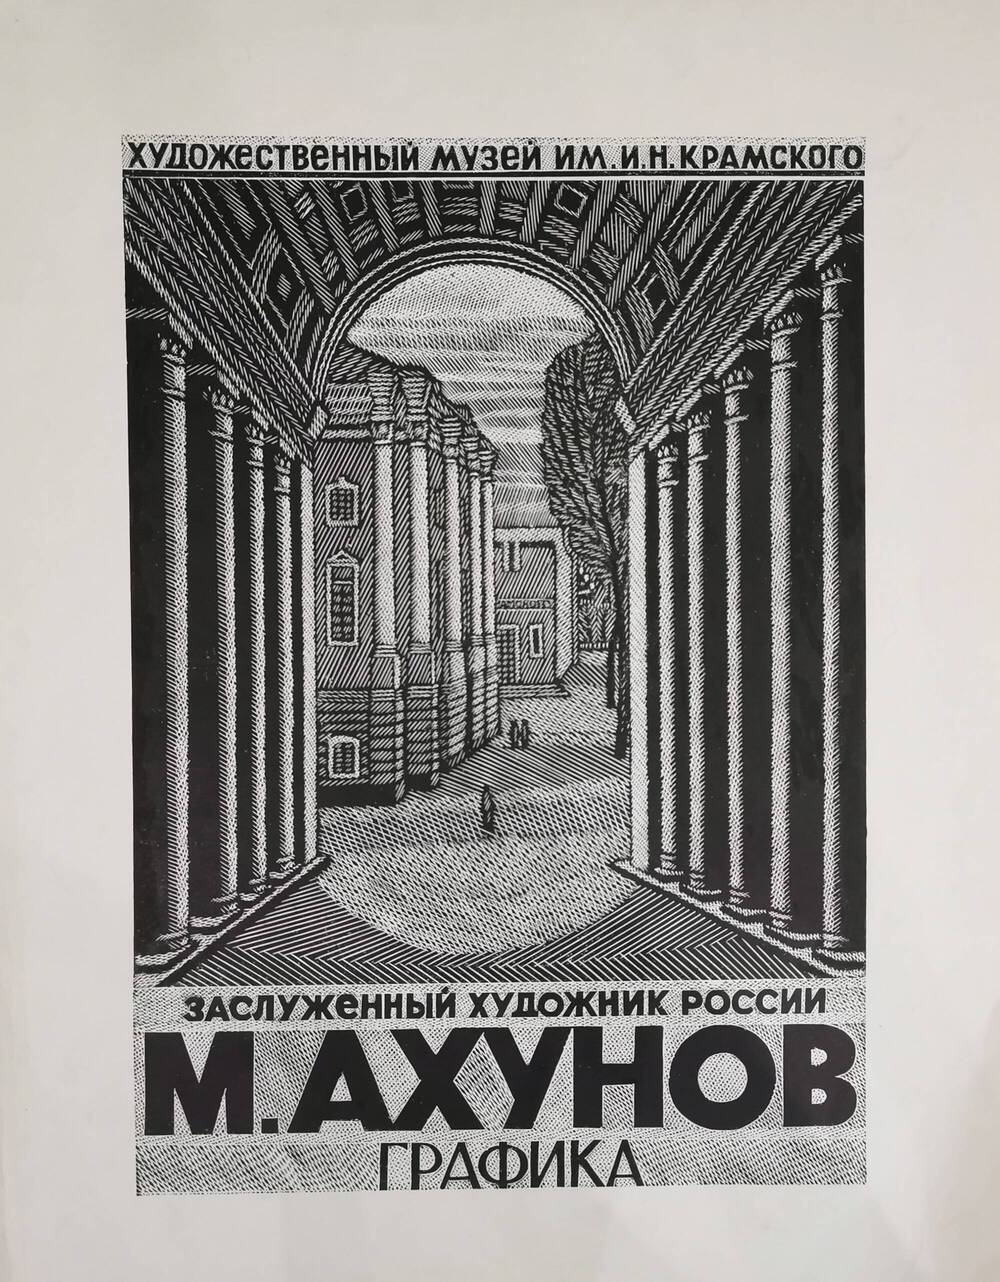 Афиша выставки М.Ф. Ахунова в художественном музее им. И.Н. Крамского.